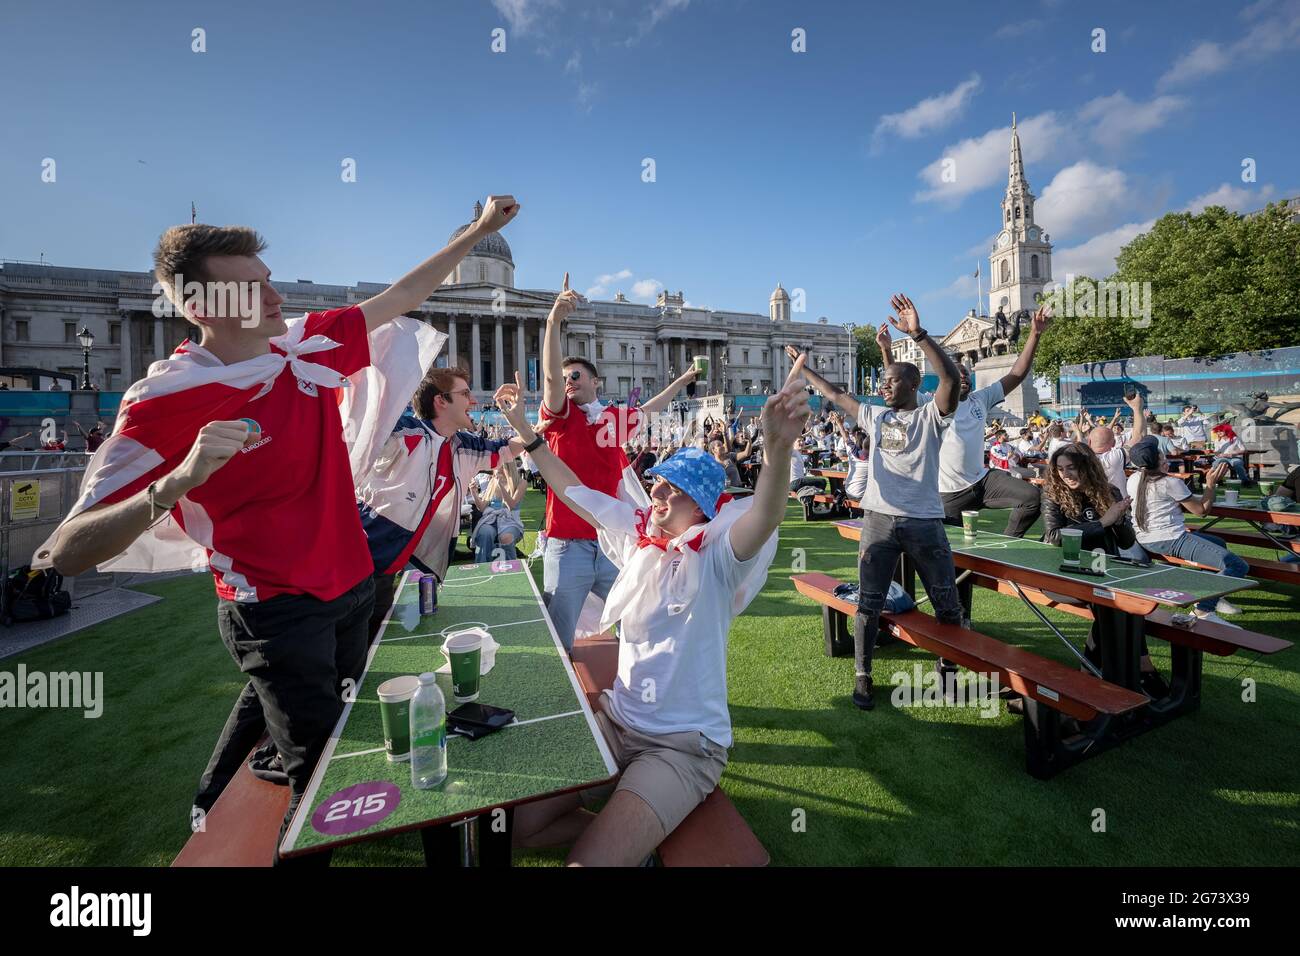 EURO 2020: Inghilterra contro Danimarca. I tifosi inglesi guardano i grandi schermi di Trafalgar Square mentre l'Inghilterra affronta la Danimarca per le semifinali. Londra, Regno Unito Foto Stock